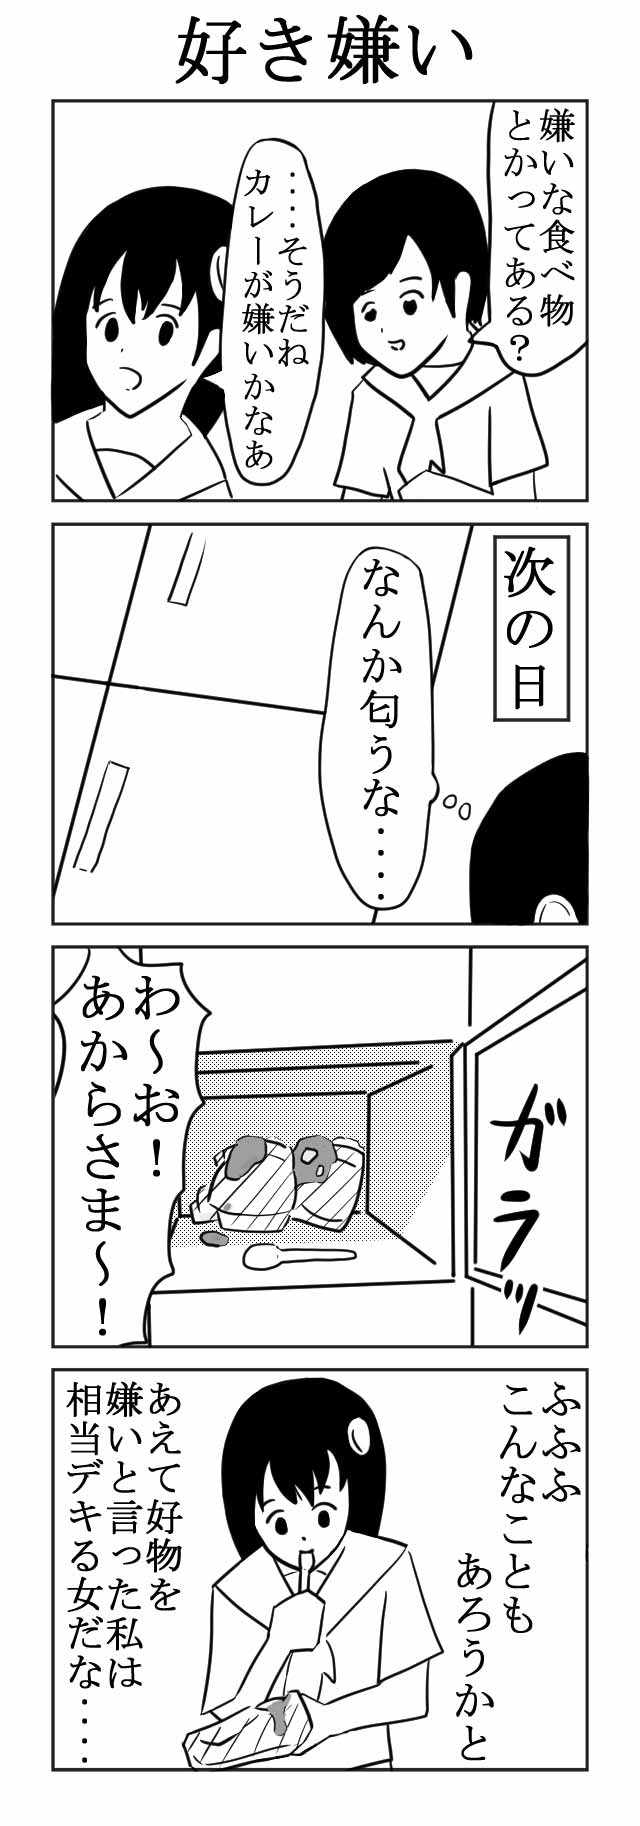 すっごく面白い四コマ漫画 第19回 ツイ4新人賞座談会 ツイ４